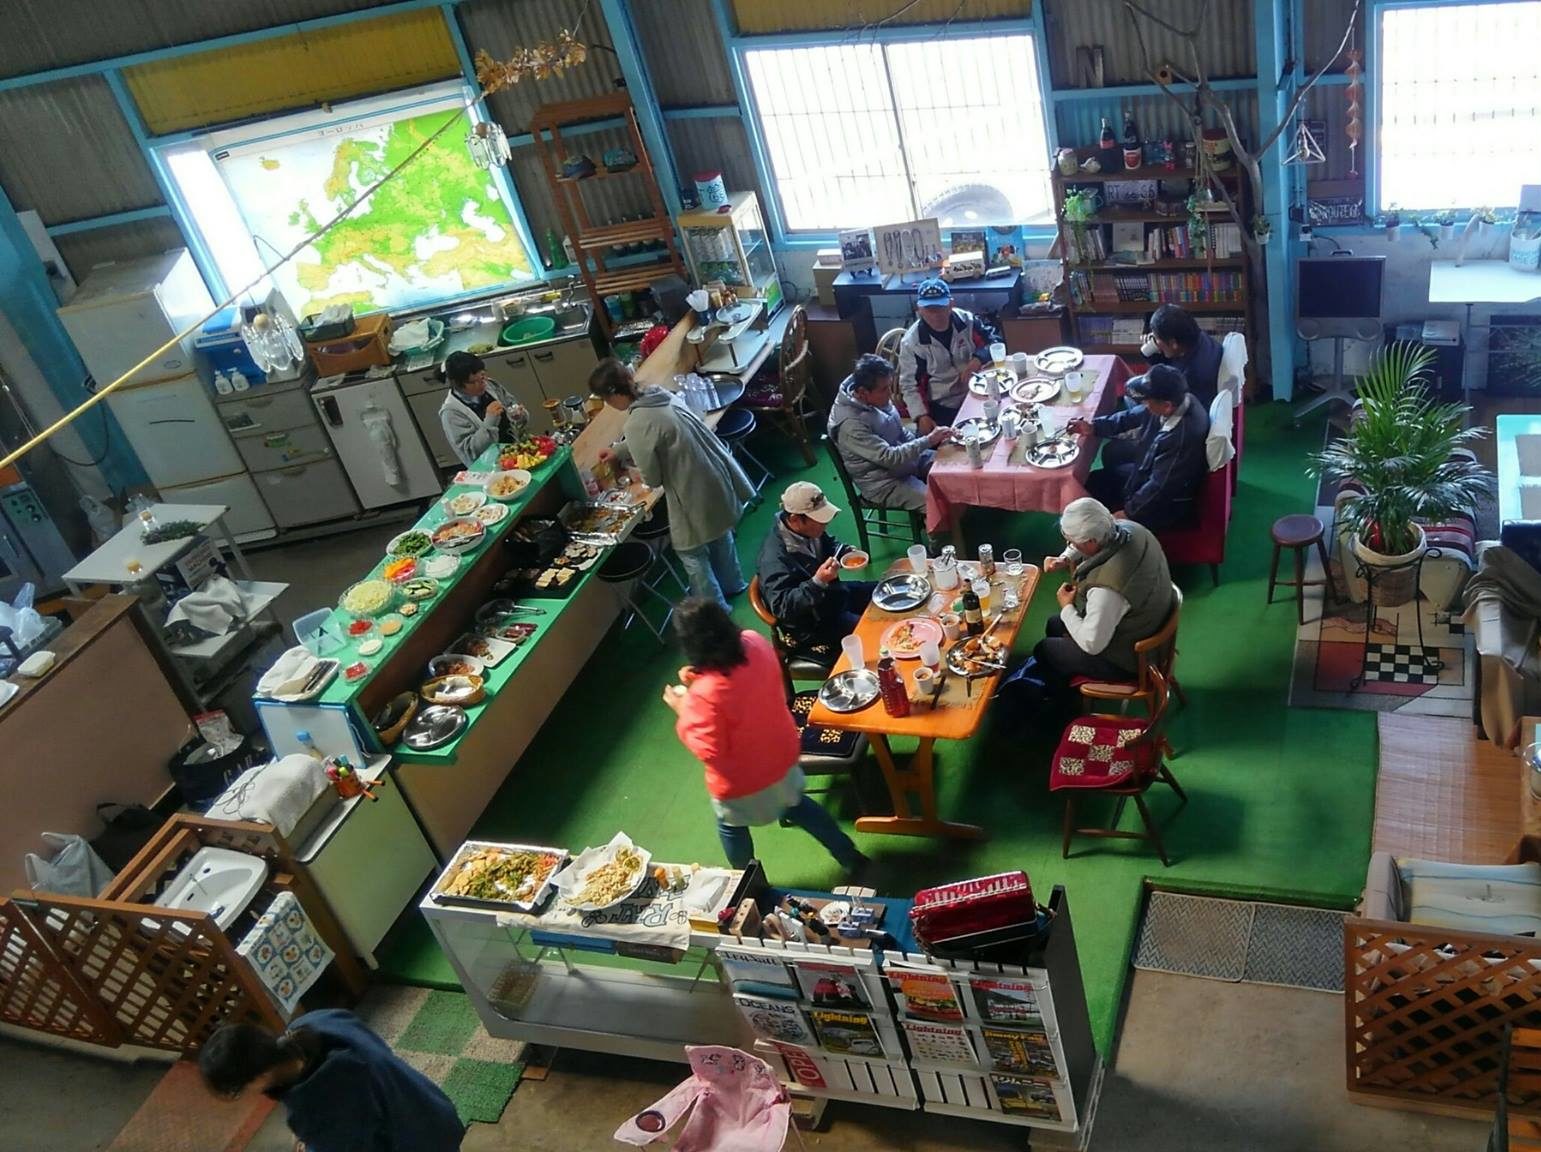 長崎市の離島「高島」の観光・宿泊・体験を紹介 釣りやシュノーケリング、シーカヤックも人気